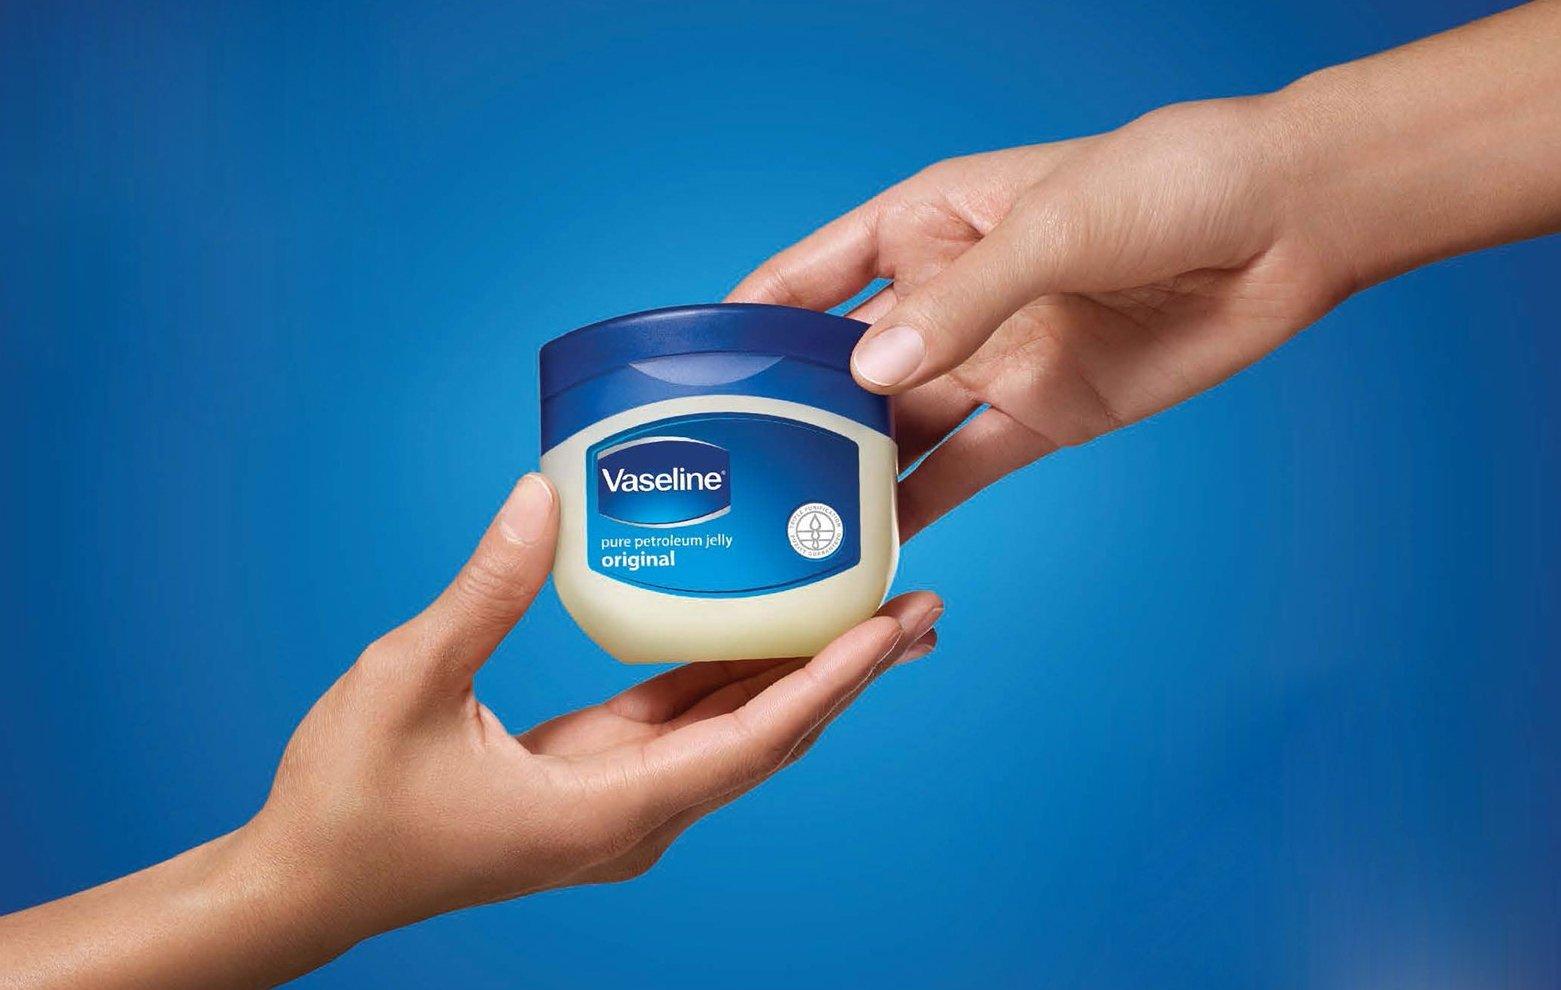 TÌm hiểu về thương hiệu Vaseline